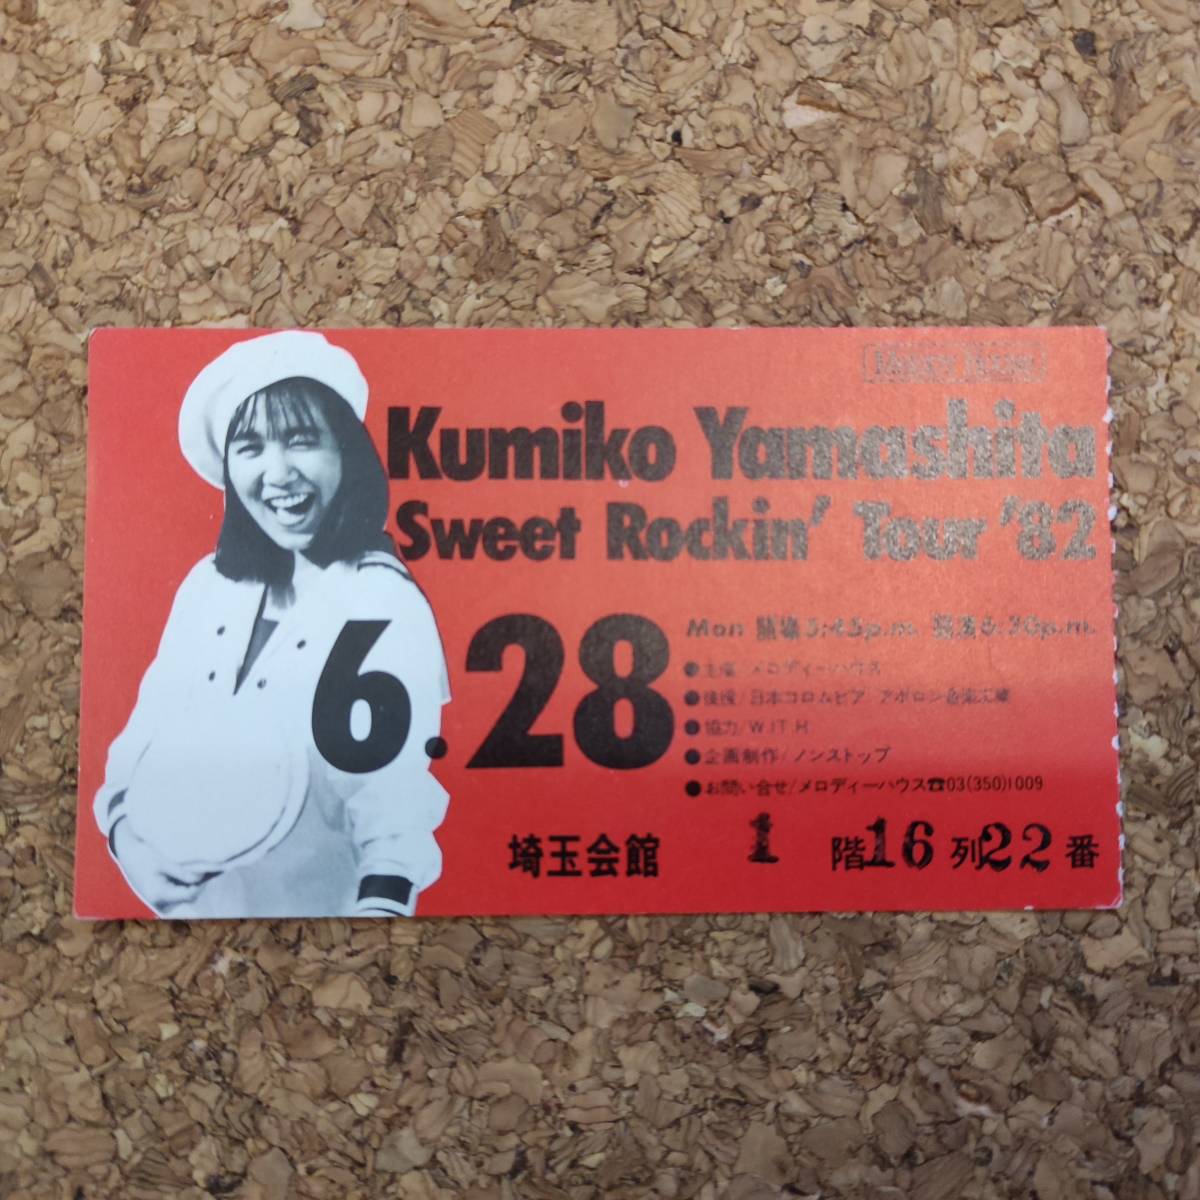 唯|チケット半券 山下久美子 Sweet Rockin' Tour '82 6月28日 埼玉会館_画像1